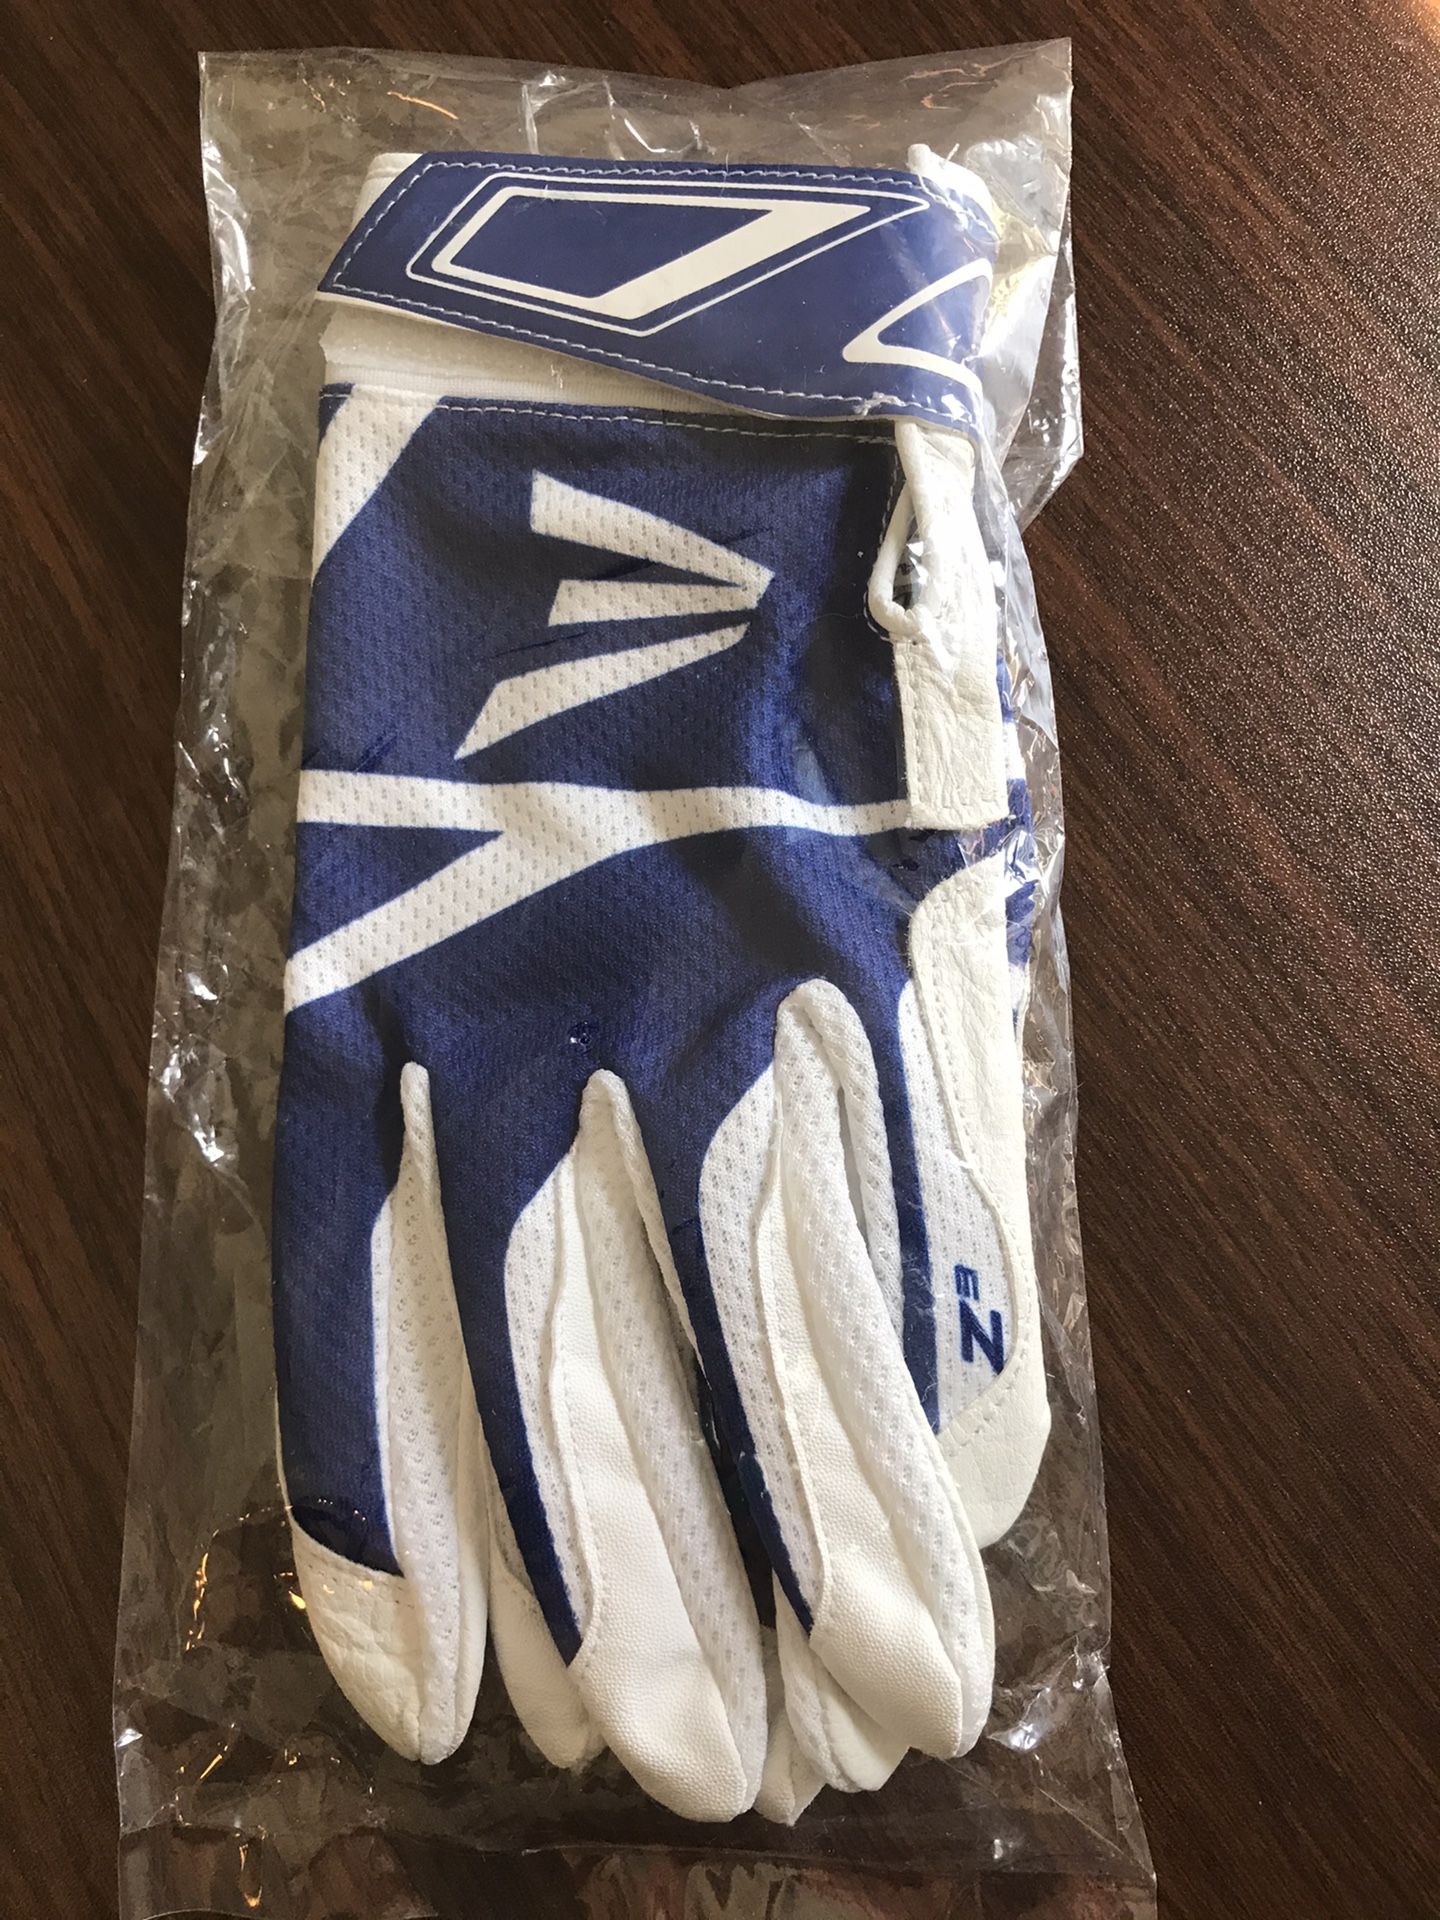 NEW! Easton Z3 Hyperskin Adult Large Baseball Softball Batting Gloves